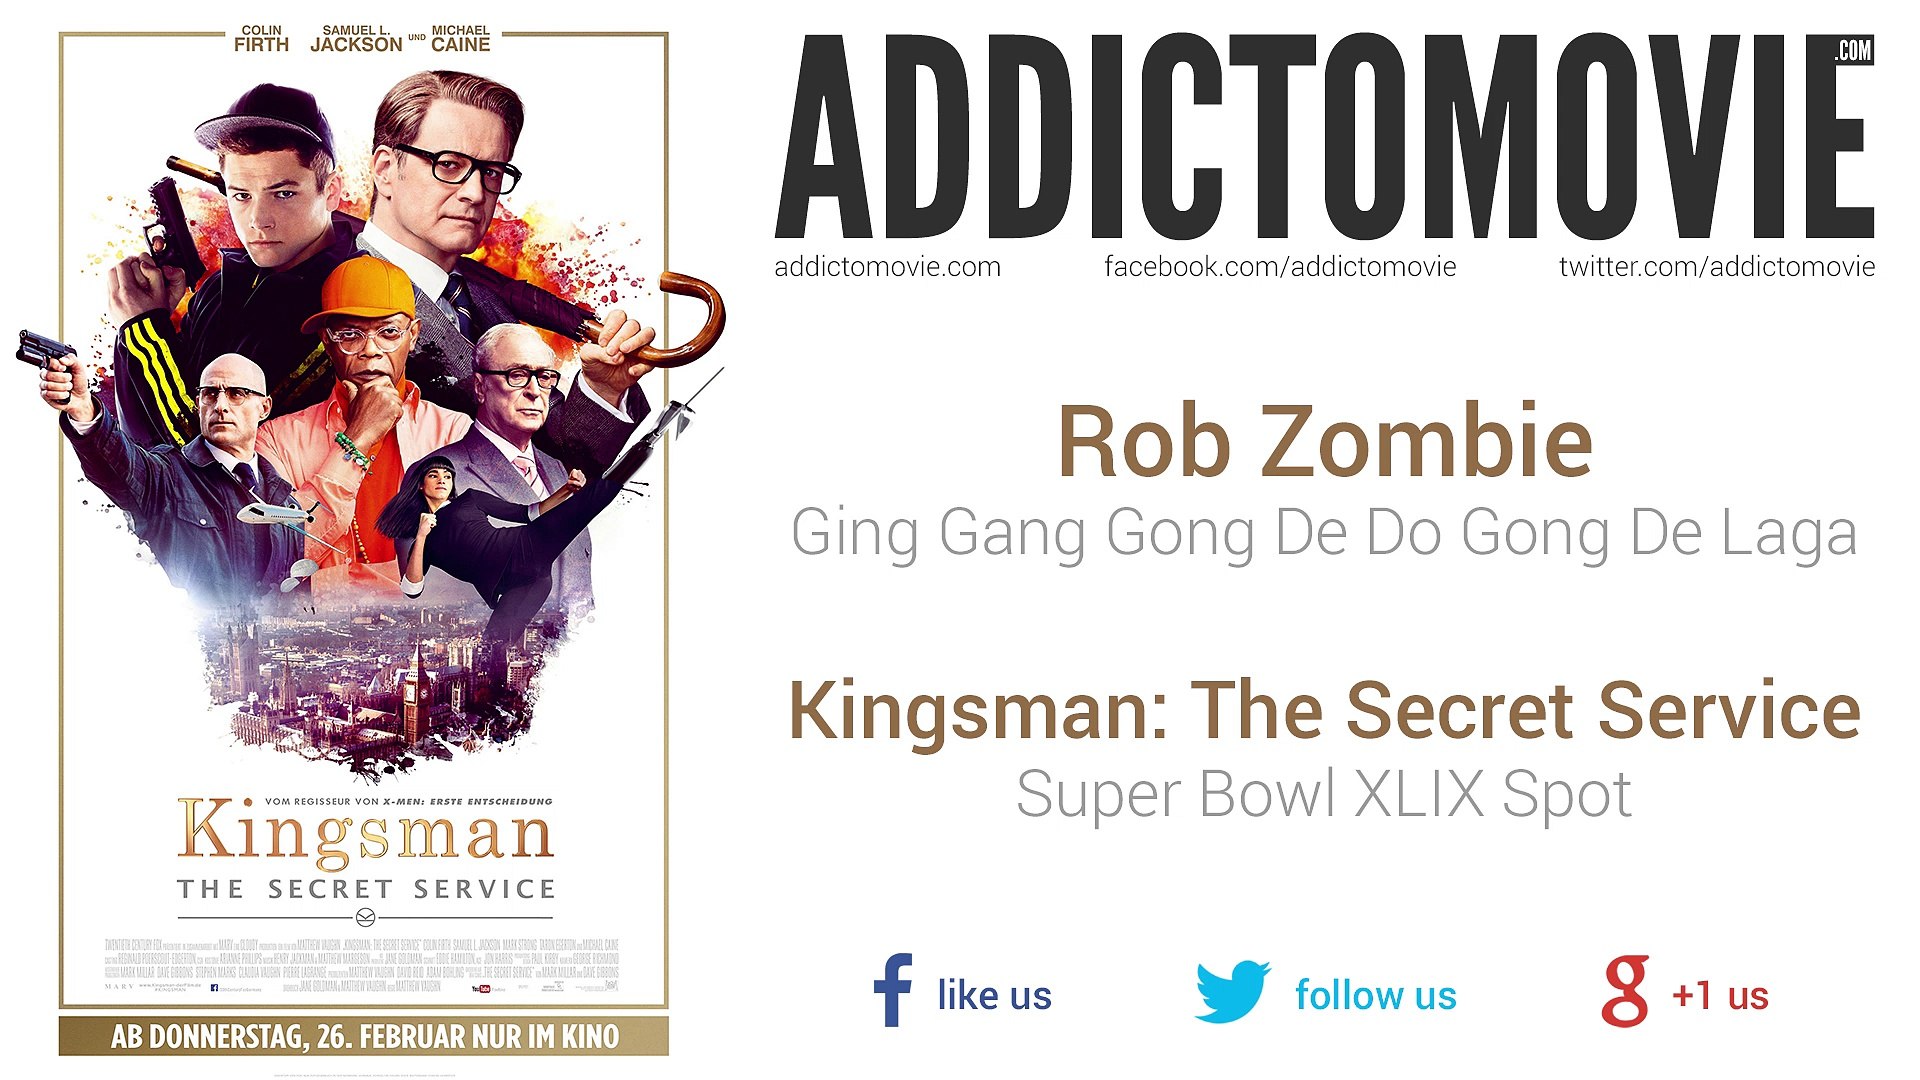 Kingsman: The Secret Service - Super Bowl XLIX Spot Music #1 (Rob Zombie -  Ging Gang Gong De Do Gong De Laga) - video Dailymotion